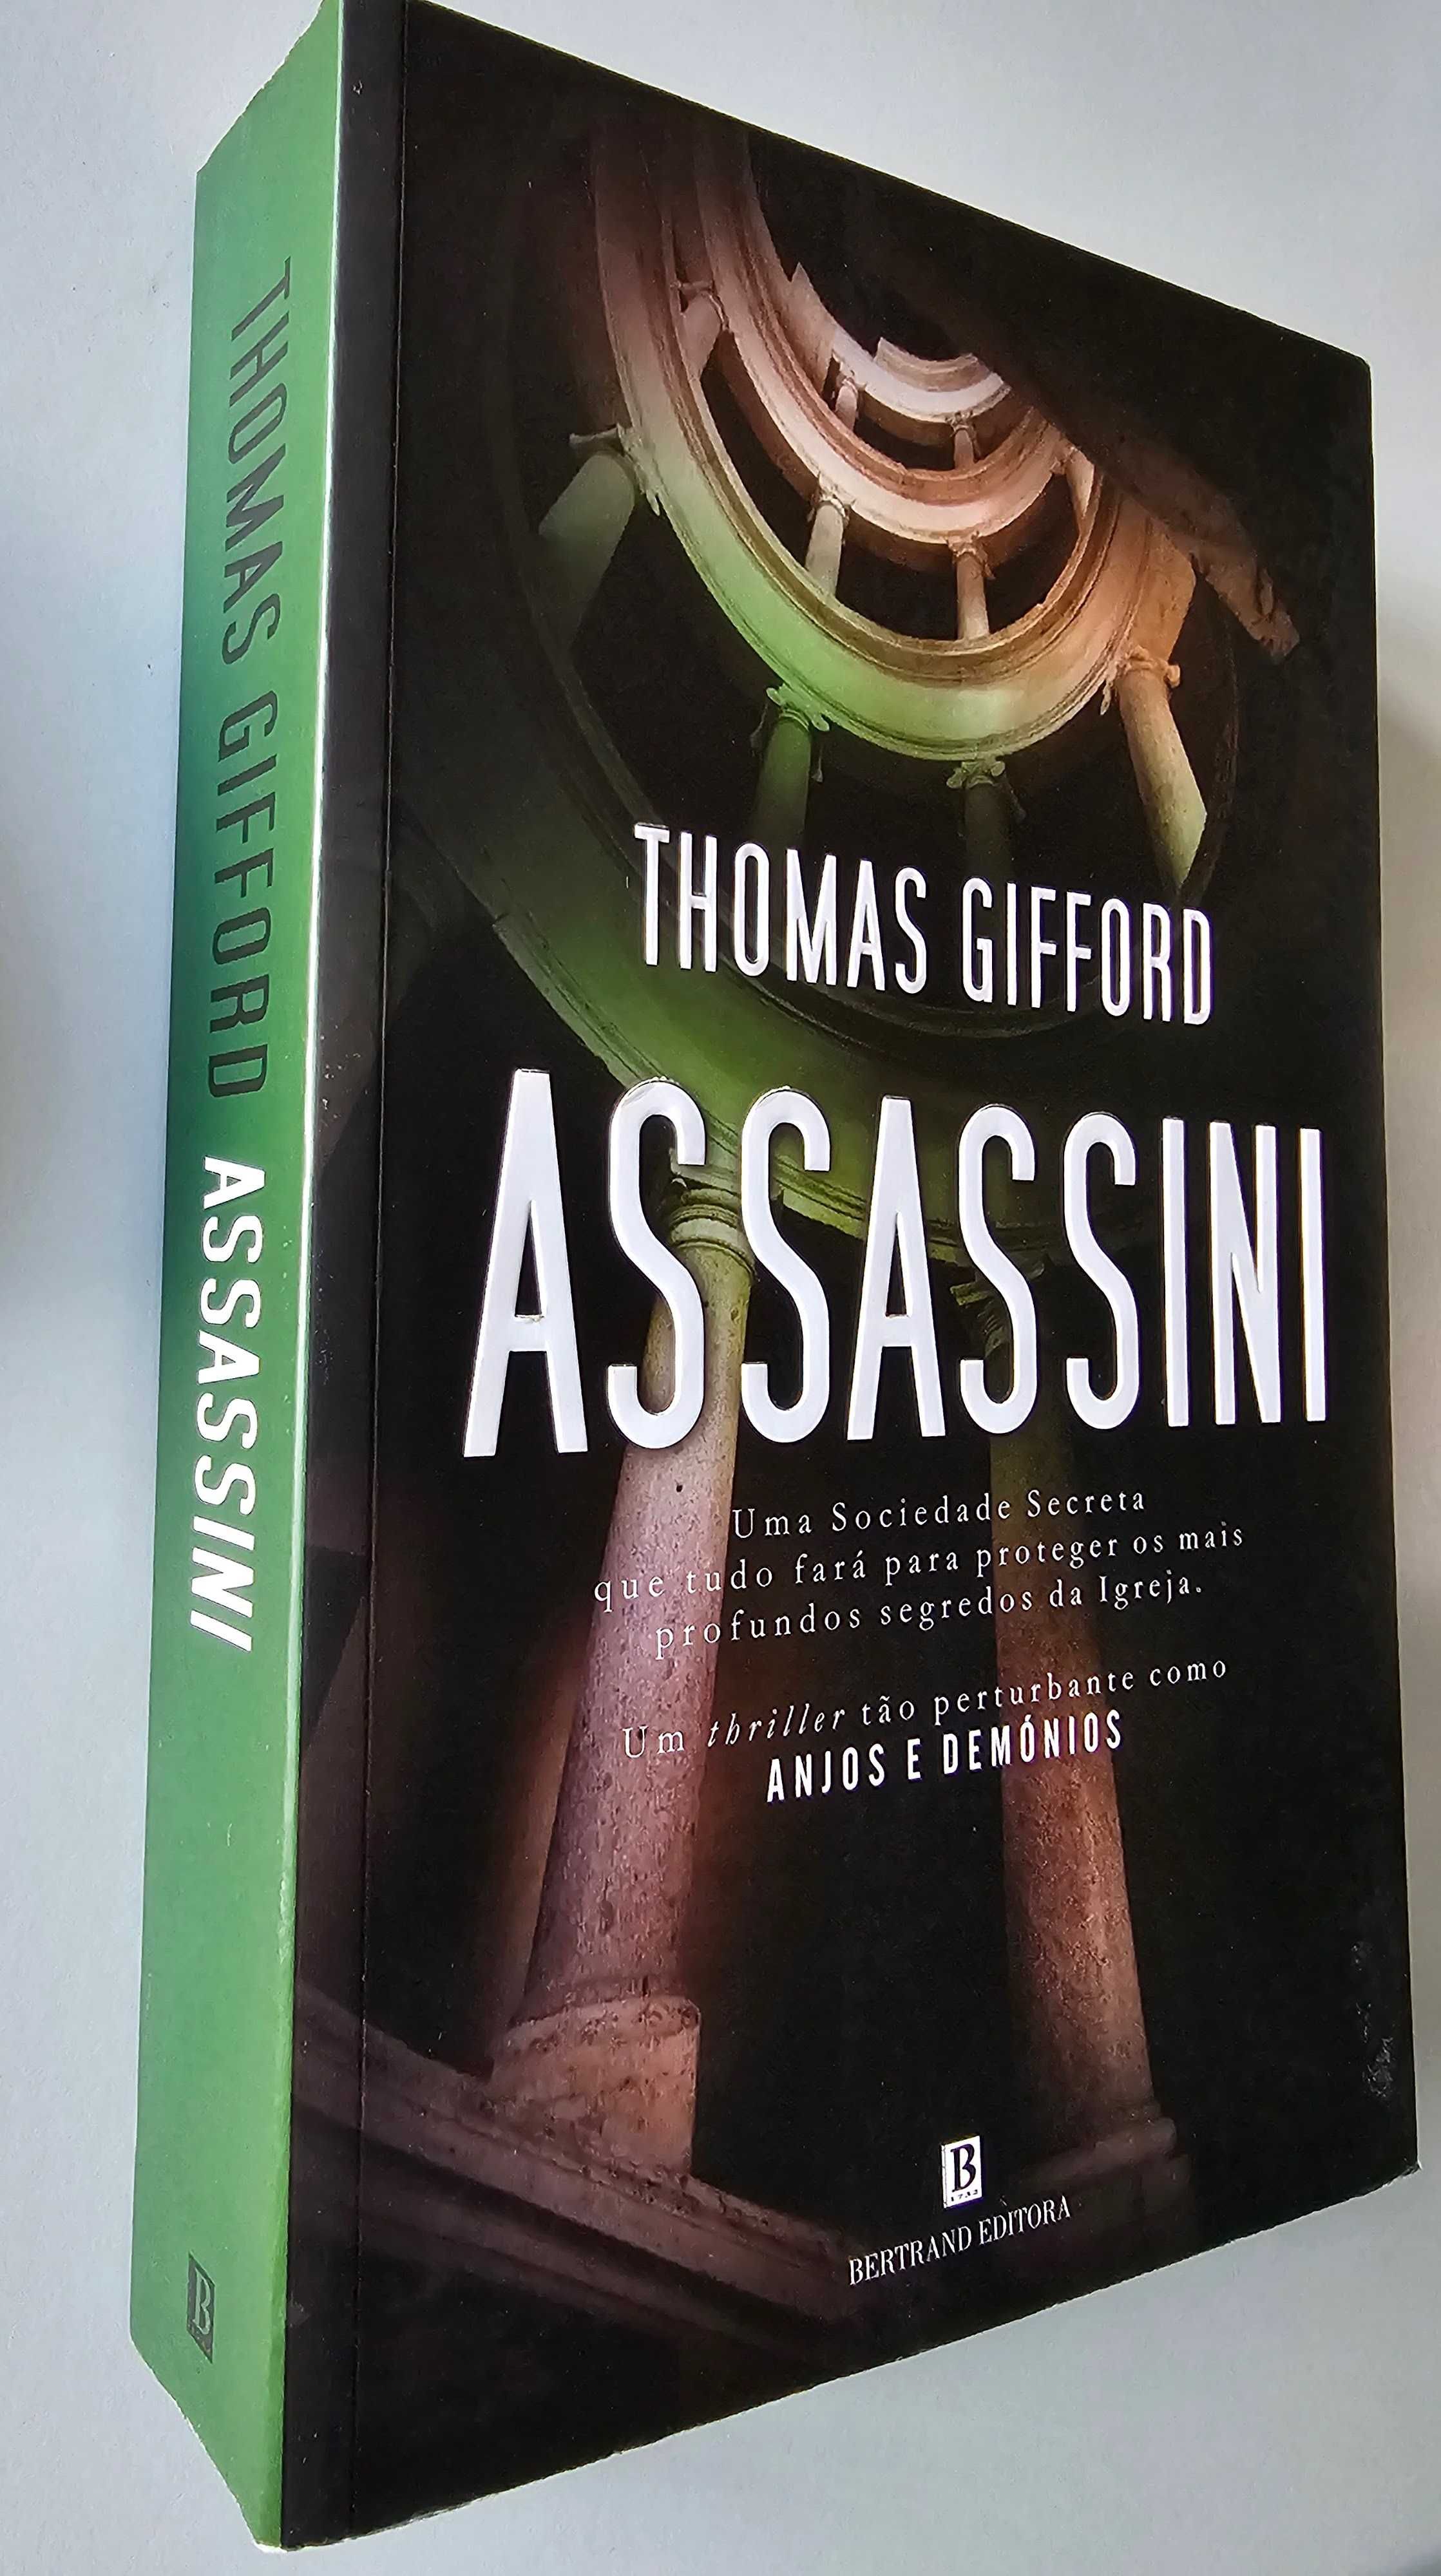 Livro "Assassini" de Thomas Gifford